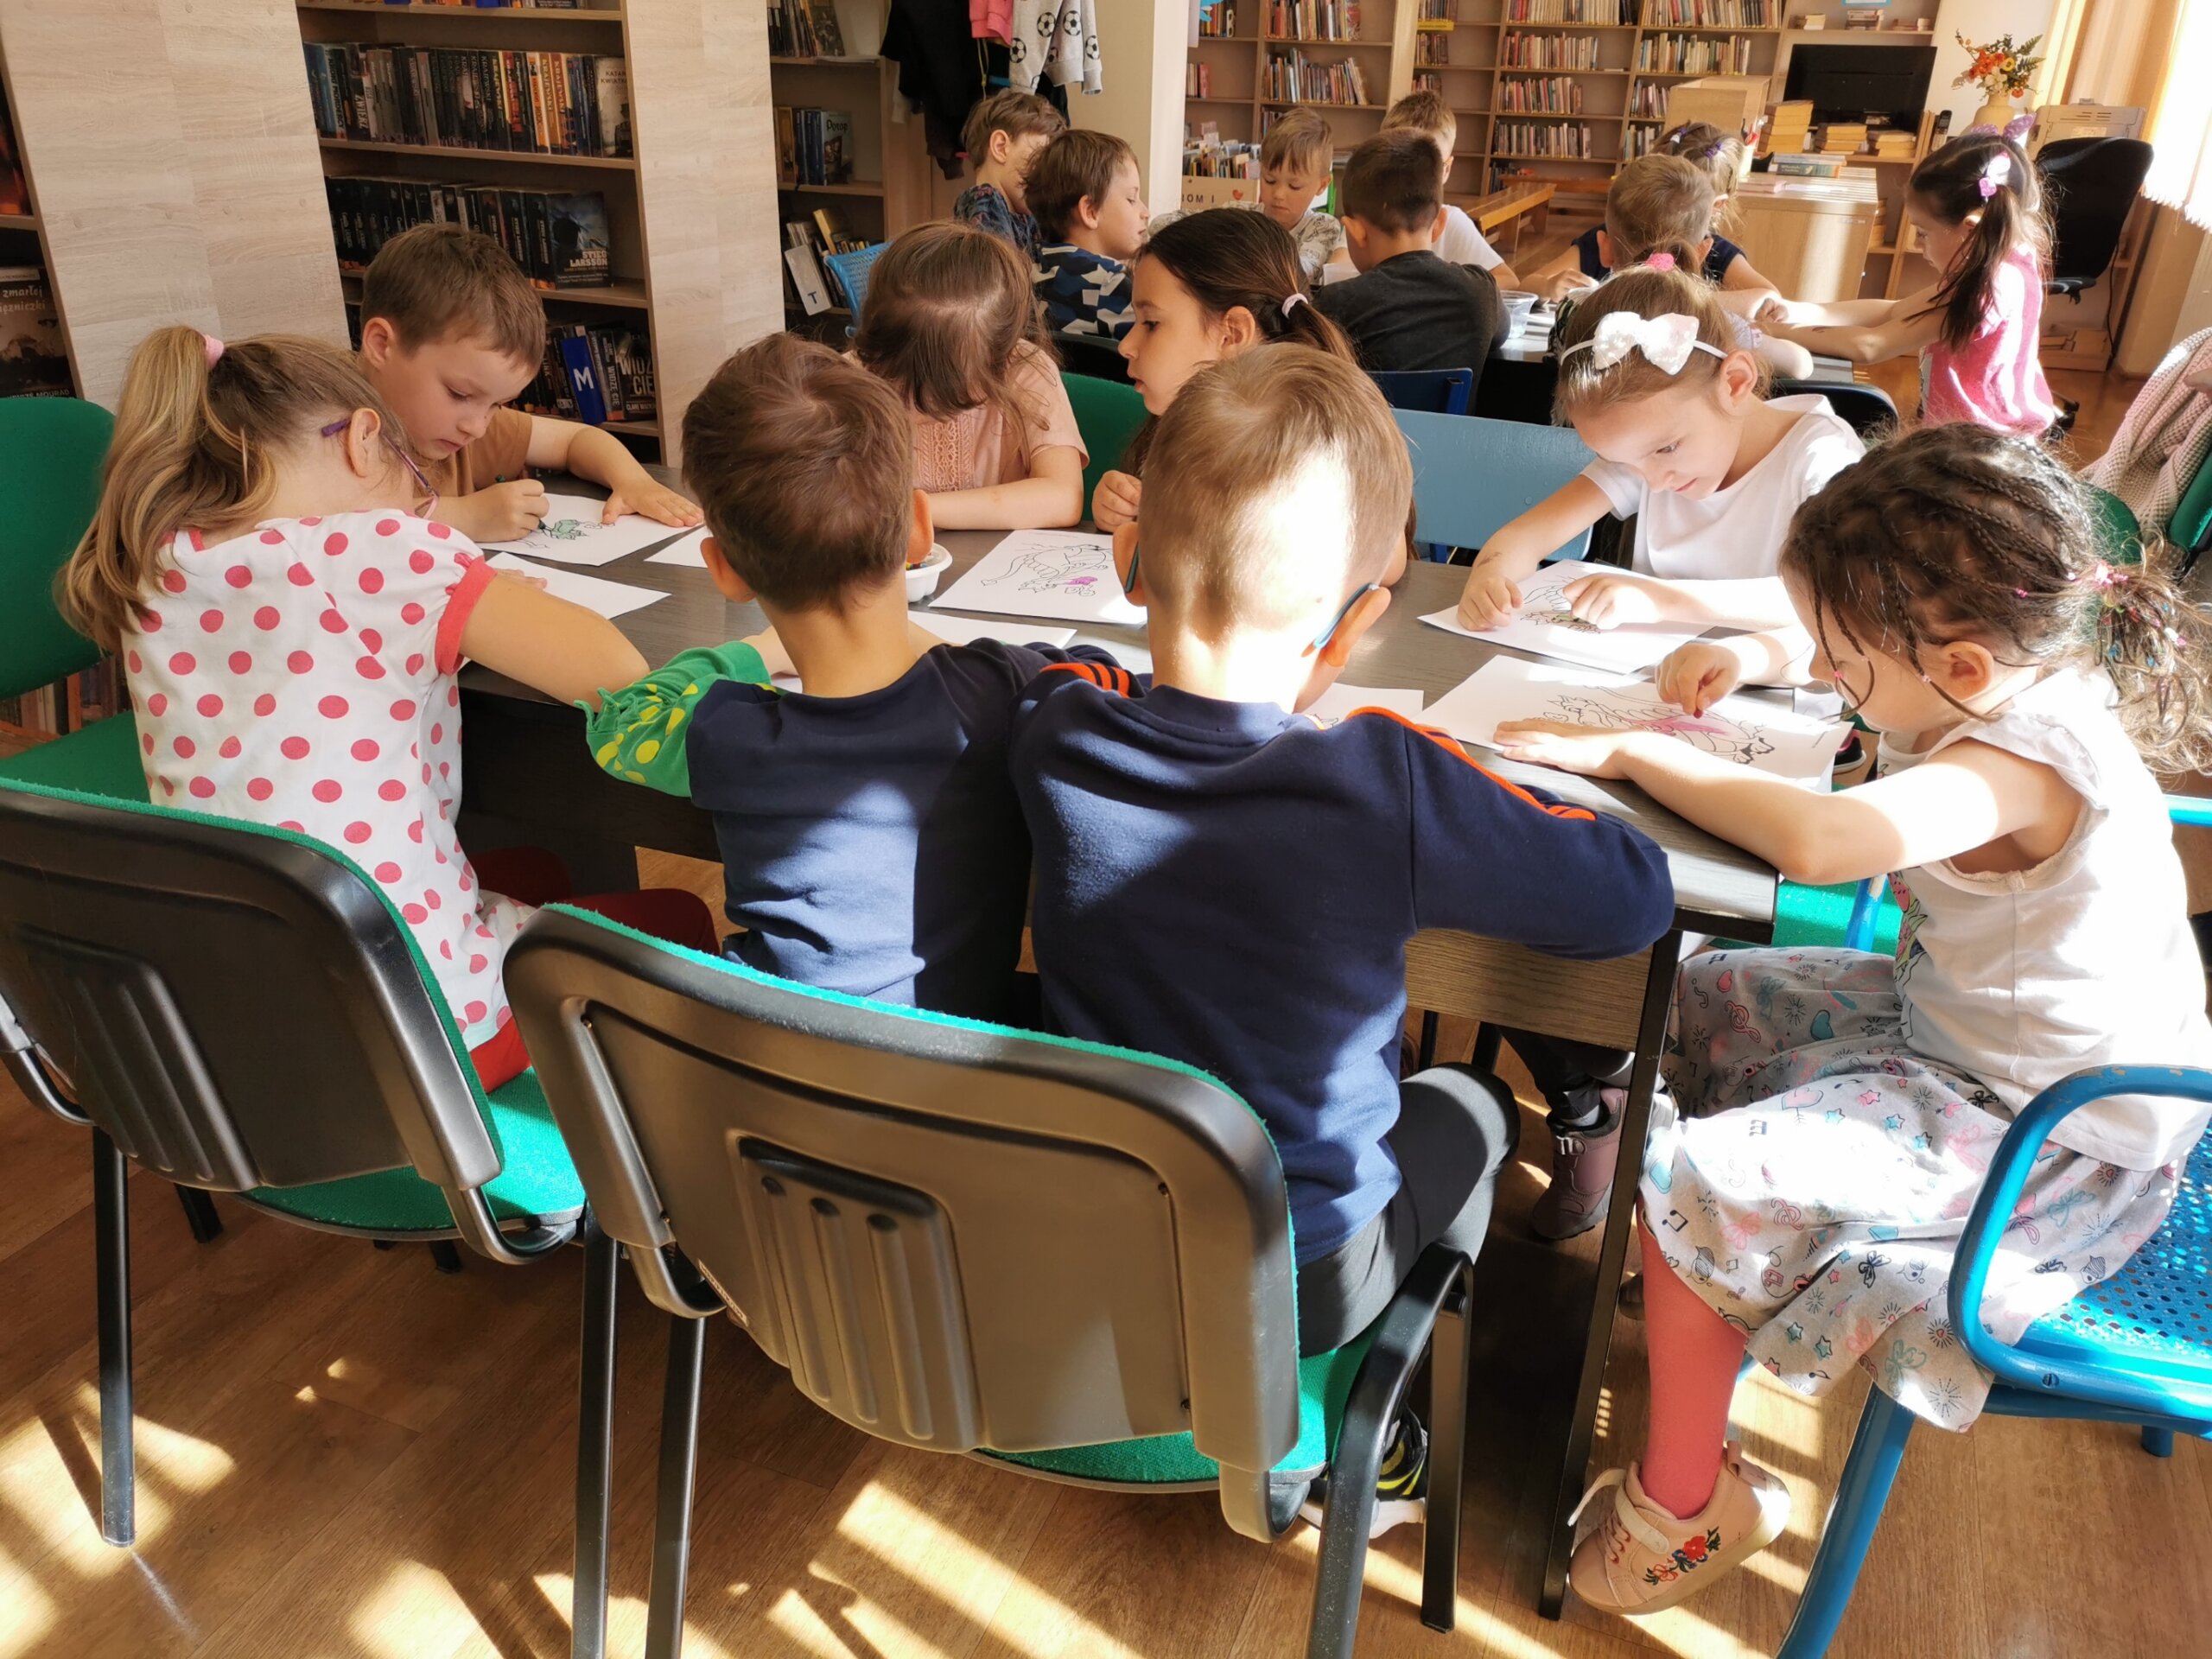 Dzieci w bibliotece siedzą przy stolikach i rysują